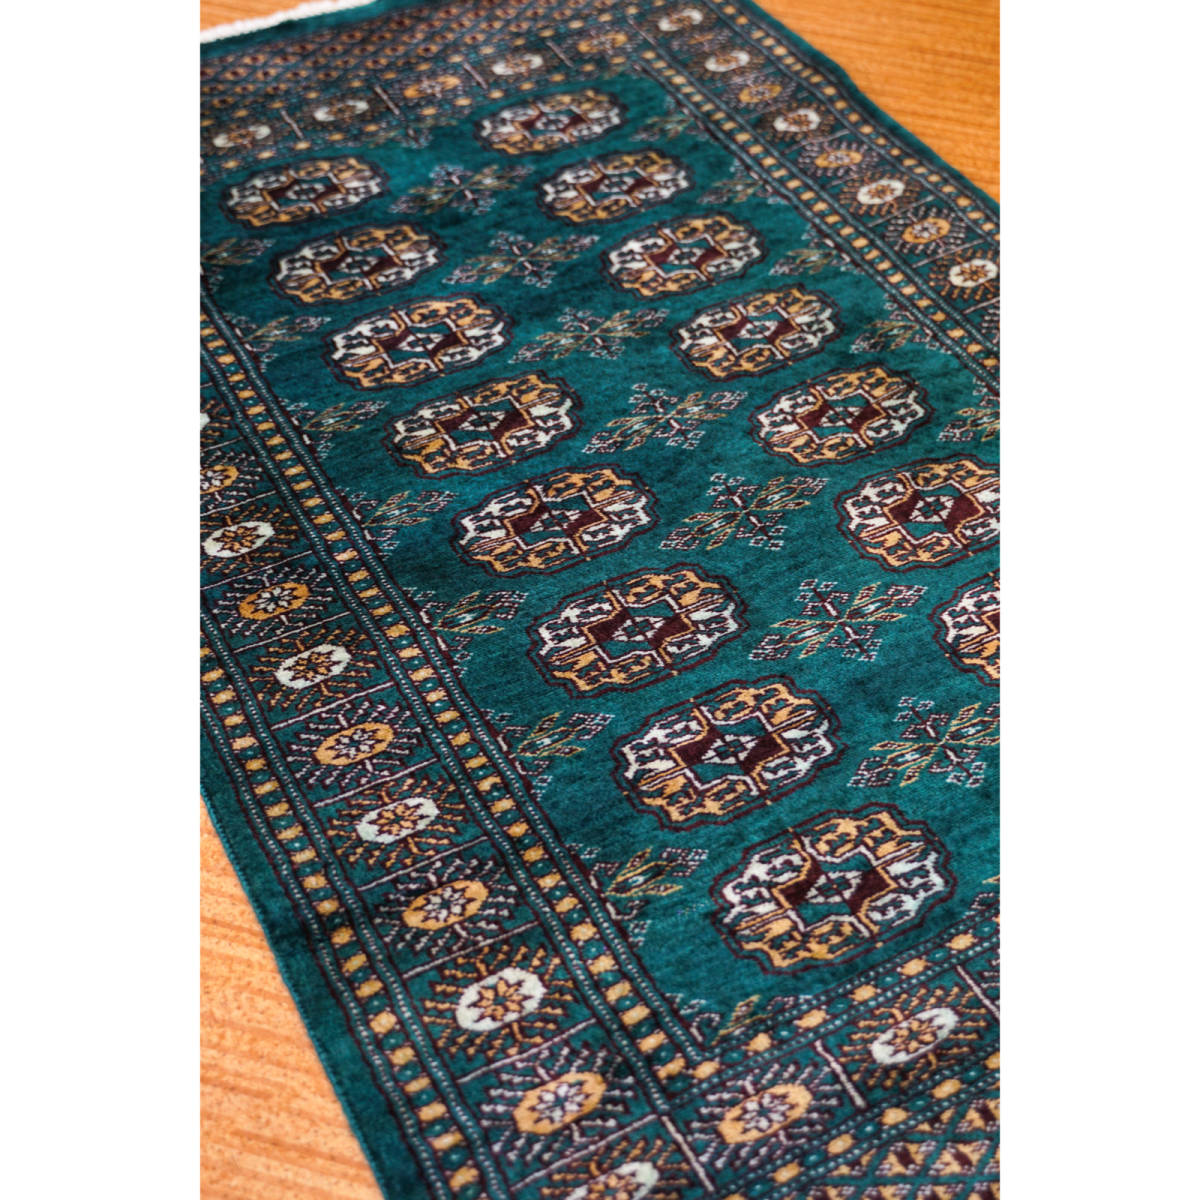 最高の品質 新品 最高級ラグ STN:907 179x129cm 手織り絨毯 パキスタン 